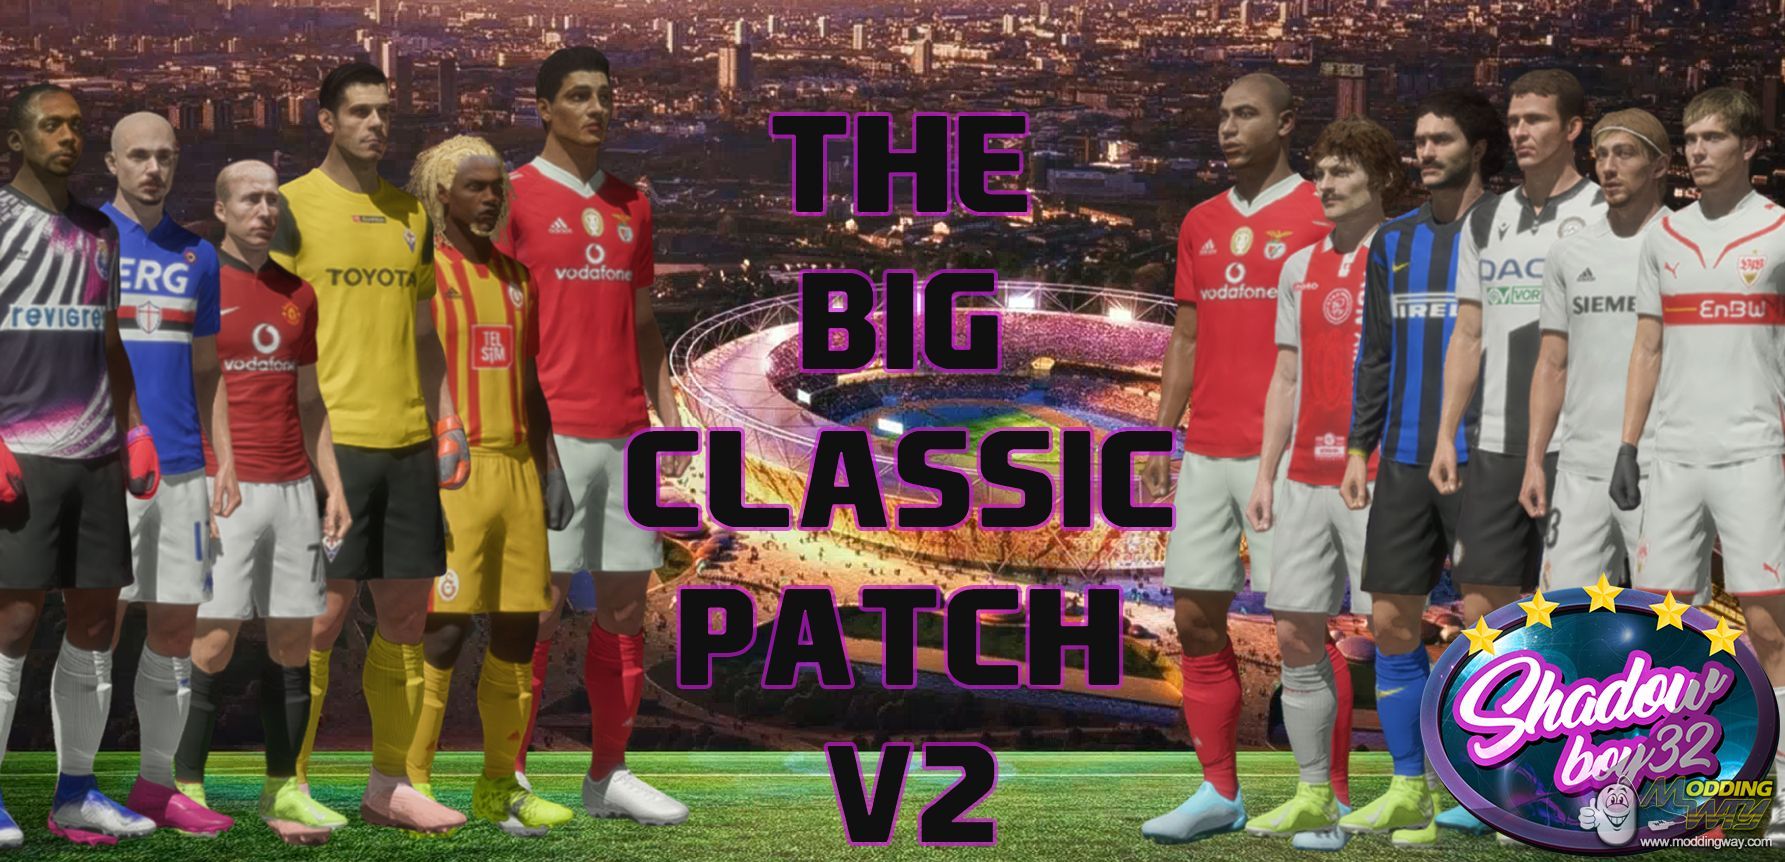 Fifa classic patch. Classic_Patch_. FIFA 17 Classic Patch. FIFA Classic Match. ФИФА 14 модингвей 16 17.